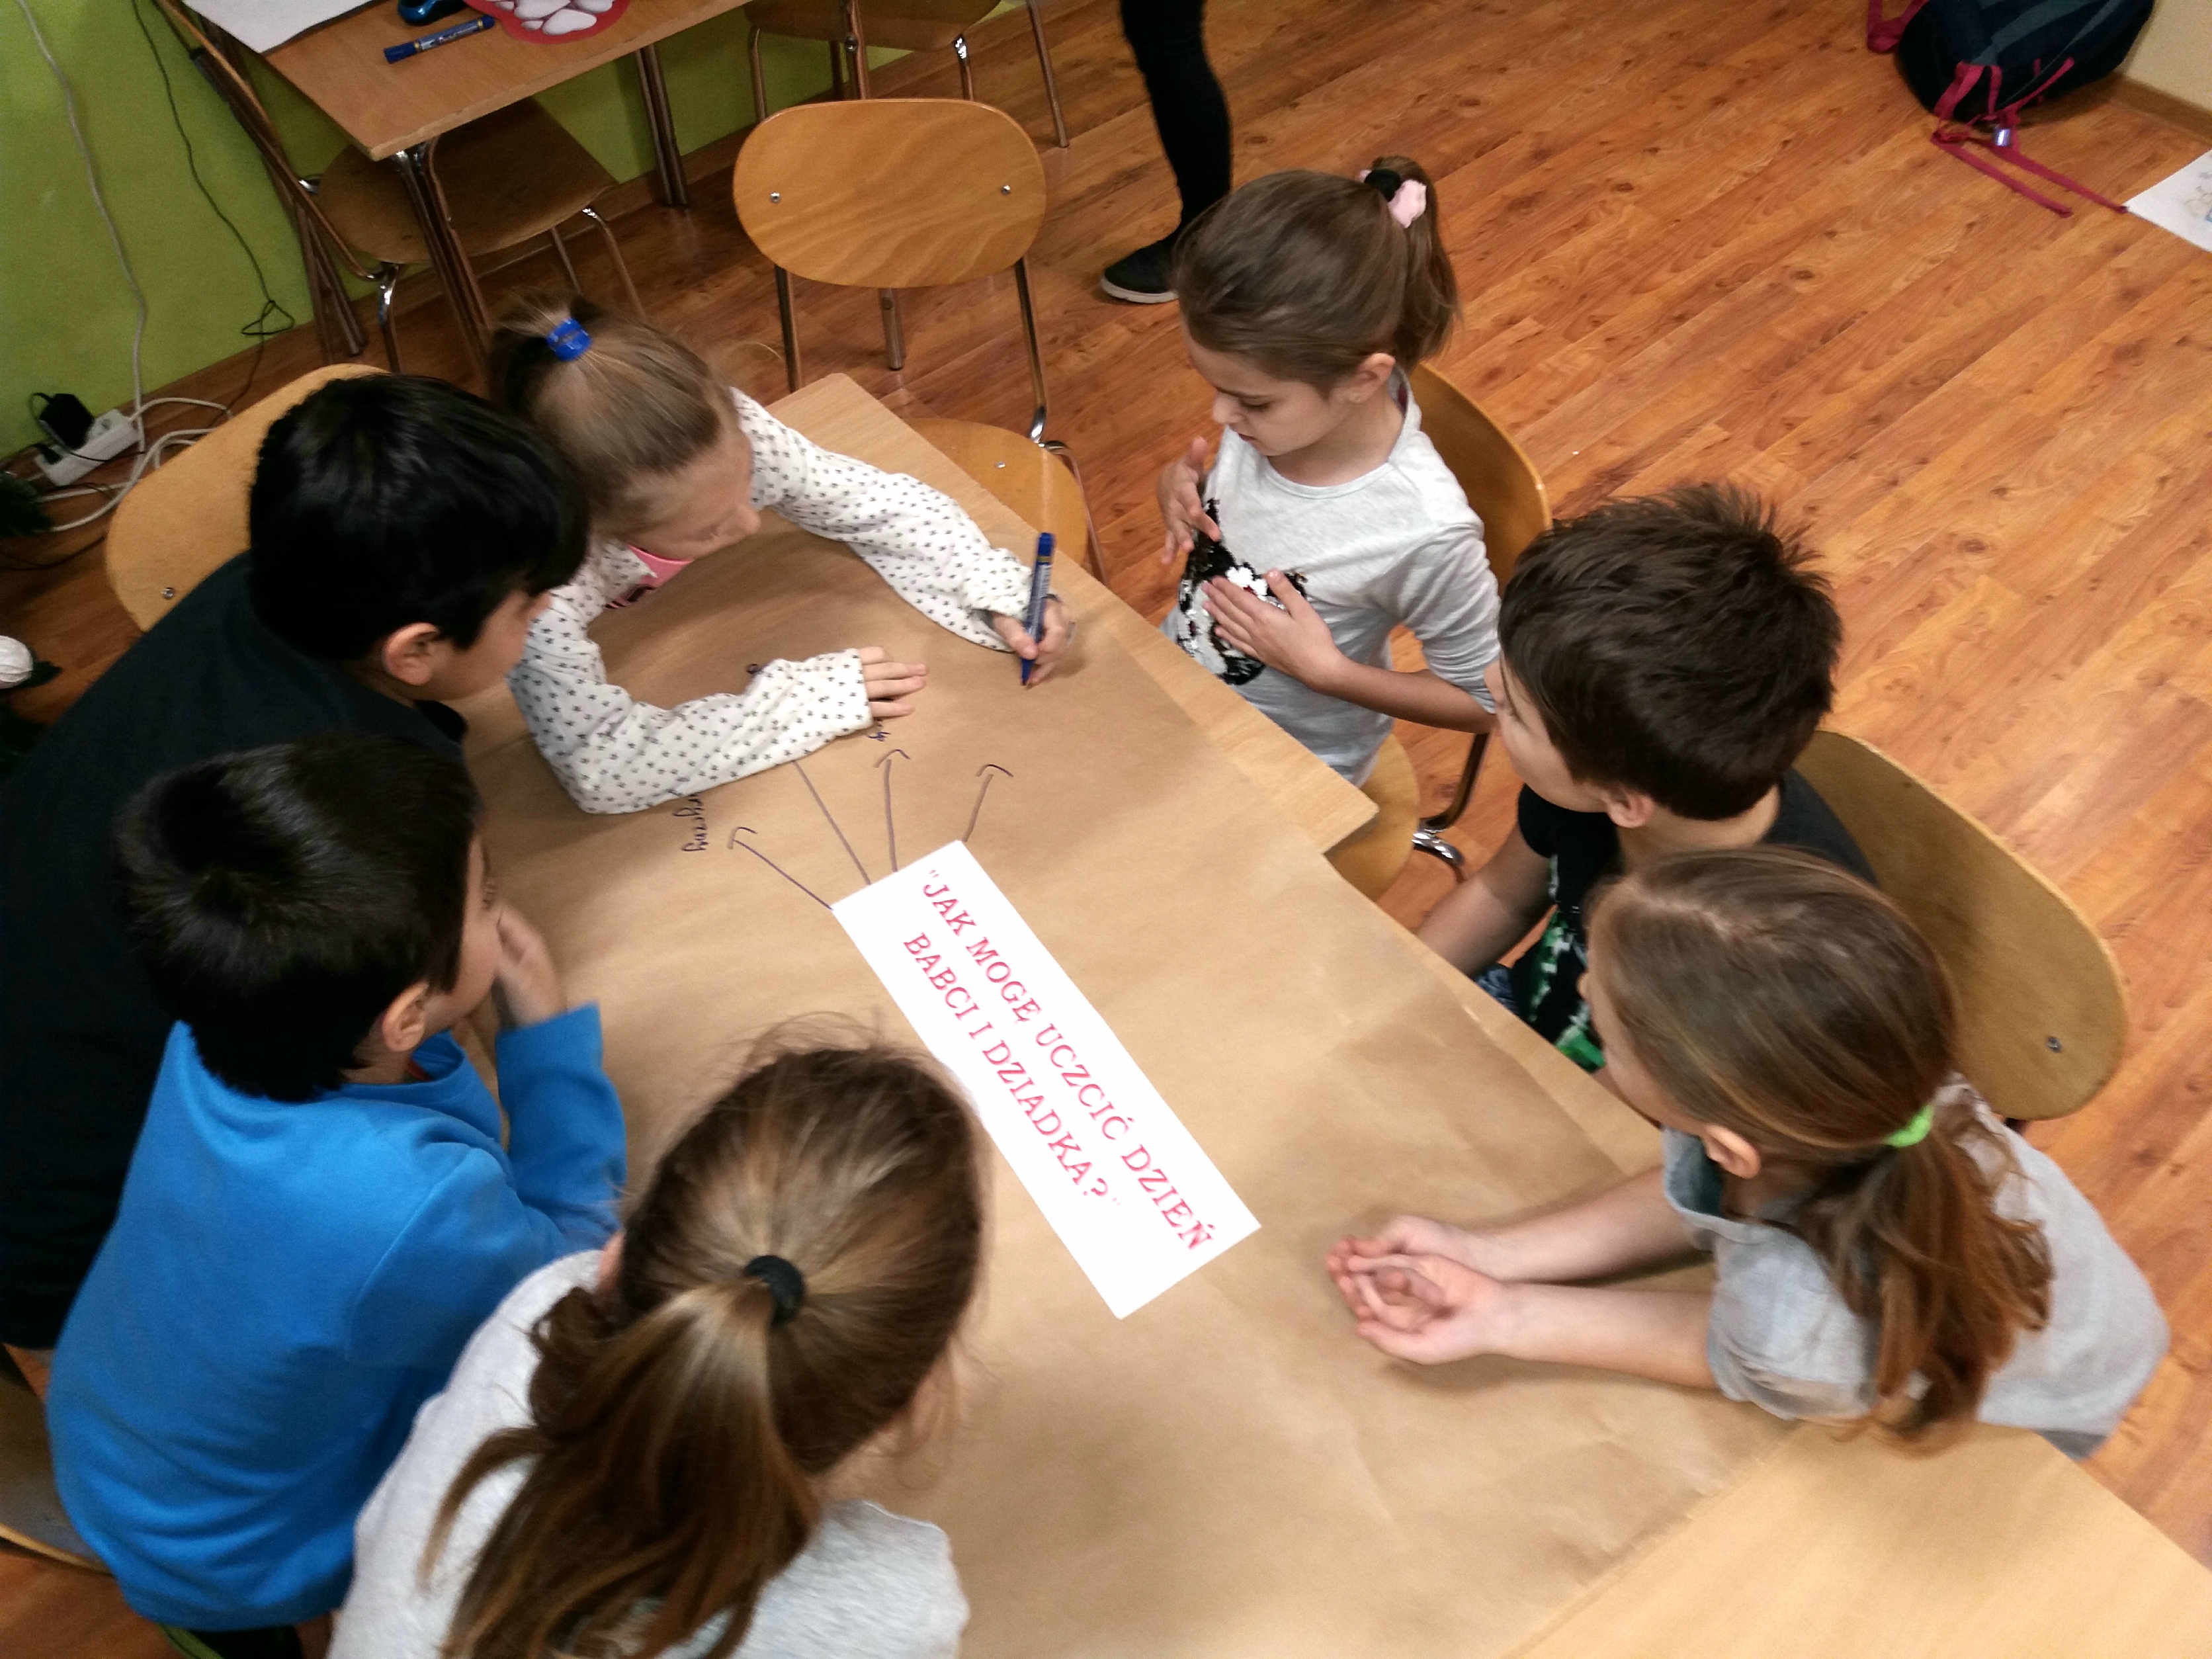 Na zdjęciu dzieci zapisują odpowiedzi na pytanie: "Jak mogę uczcić Dzień Babci i Dziadka?"